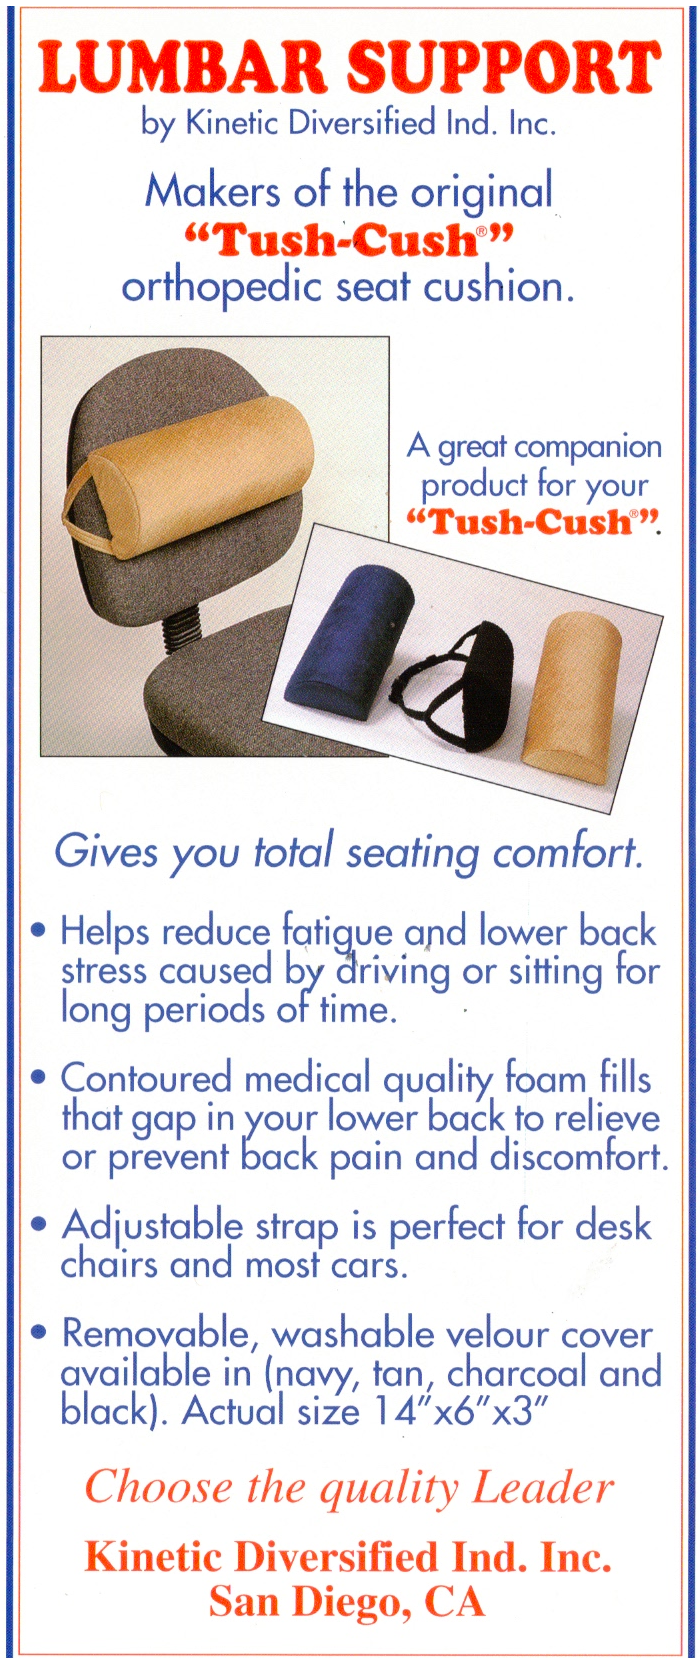 Save! Tush Cush and Lumbar Support Combo Regular Price $79.95